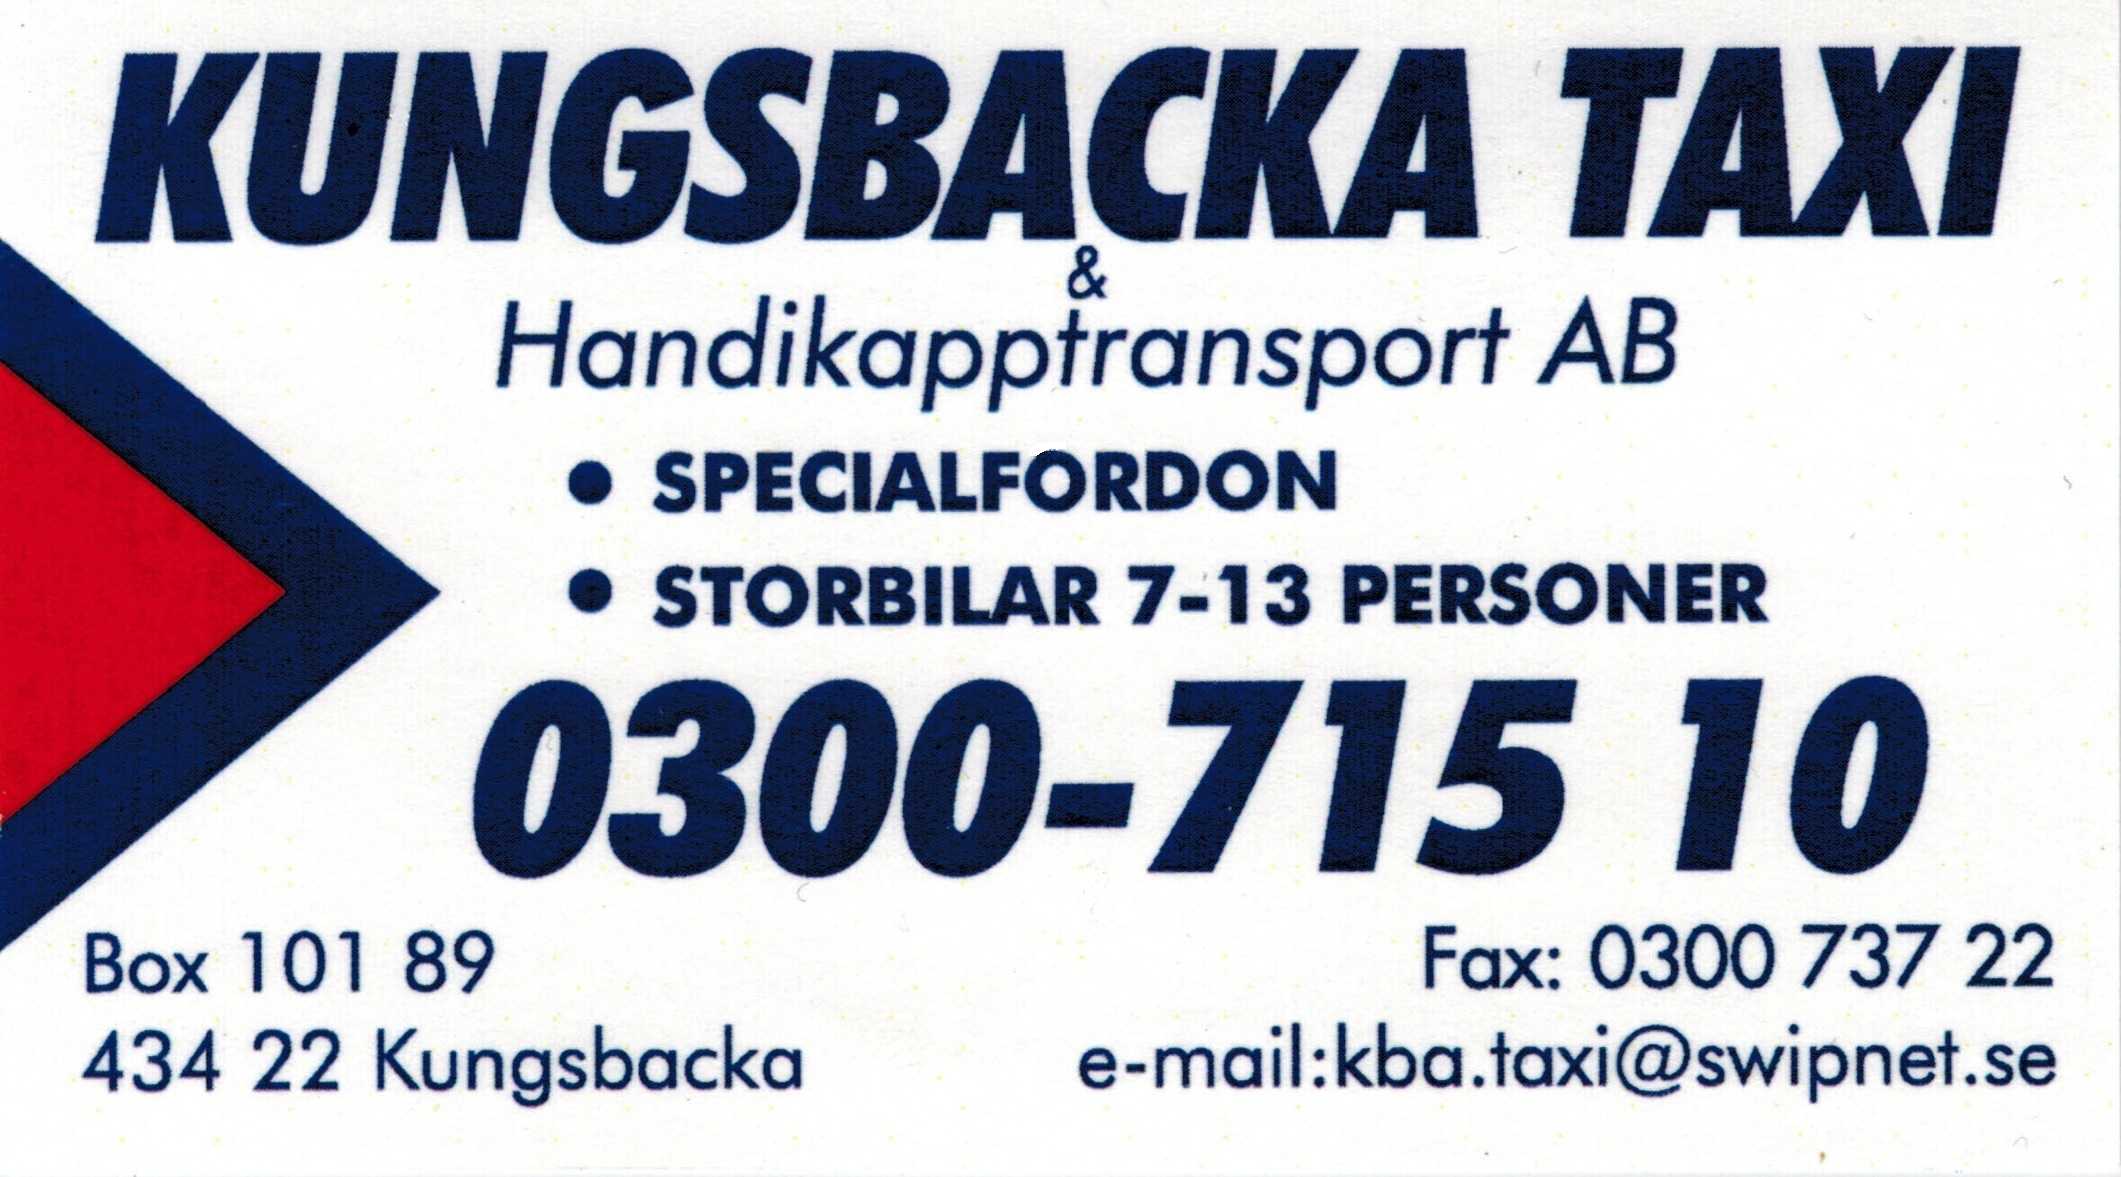 Kungsbacka Taxi & Handikapptransport AB